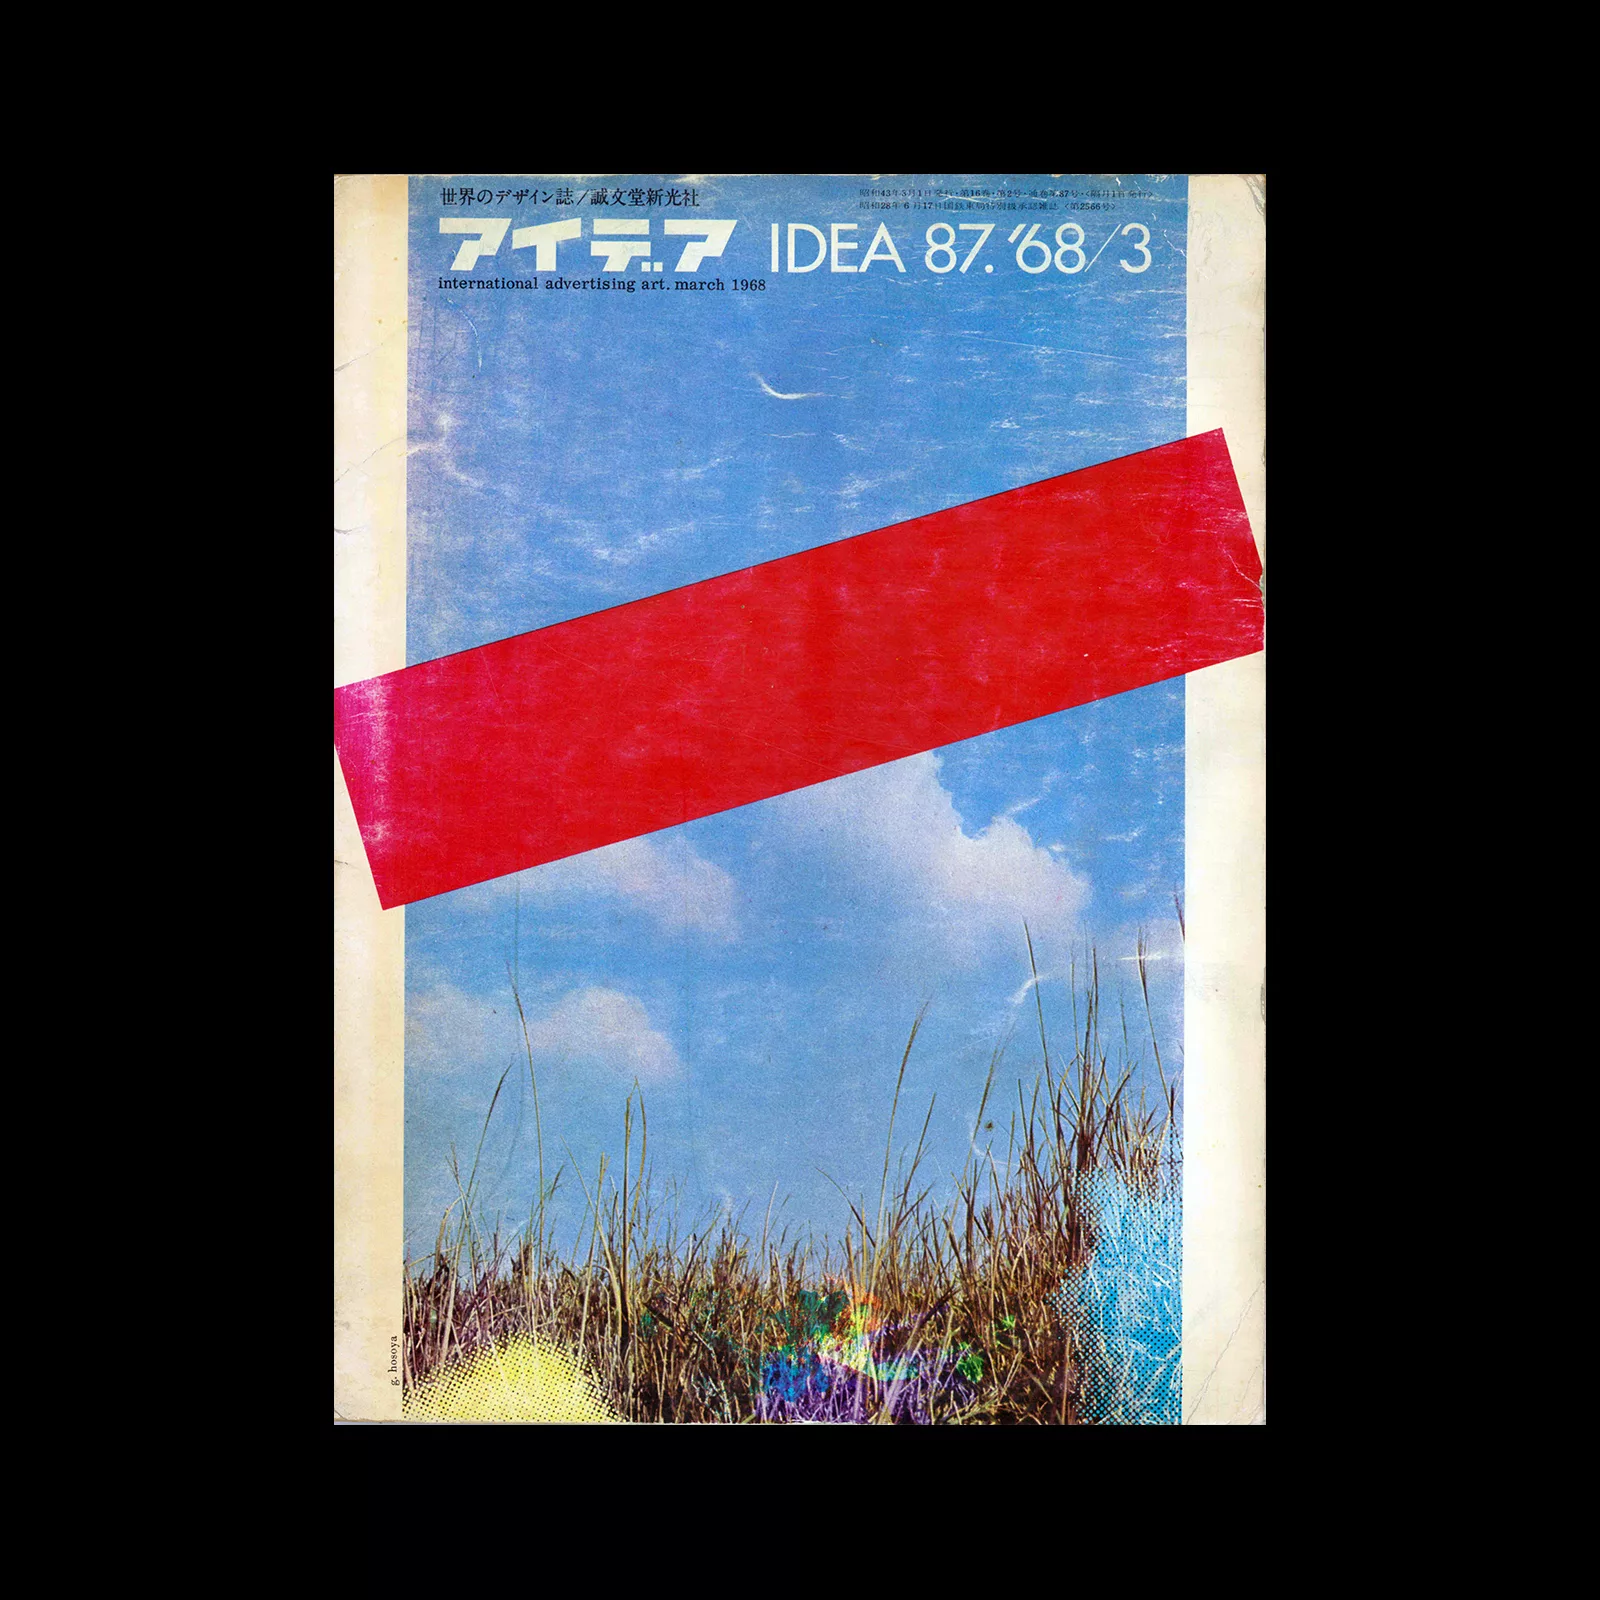 Idea 87, 1968-3. Cover design by Gan Hosoya